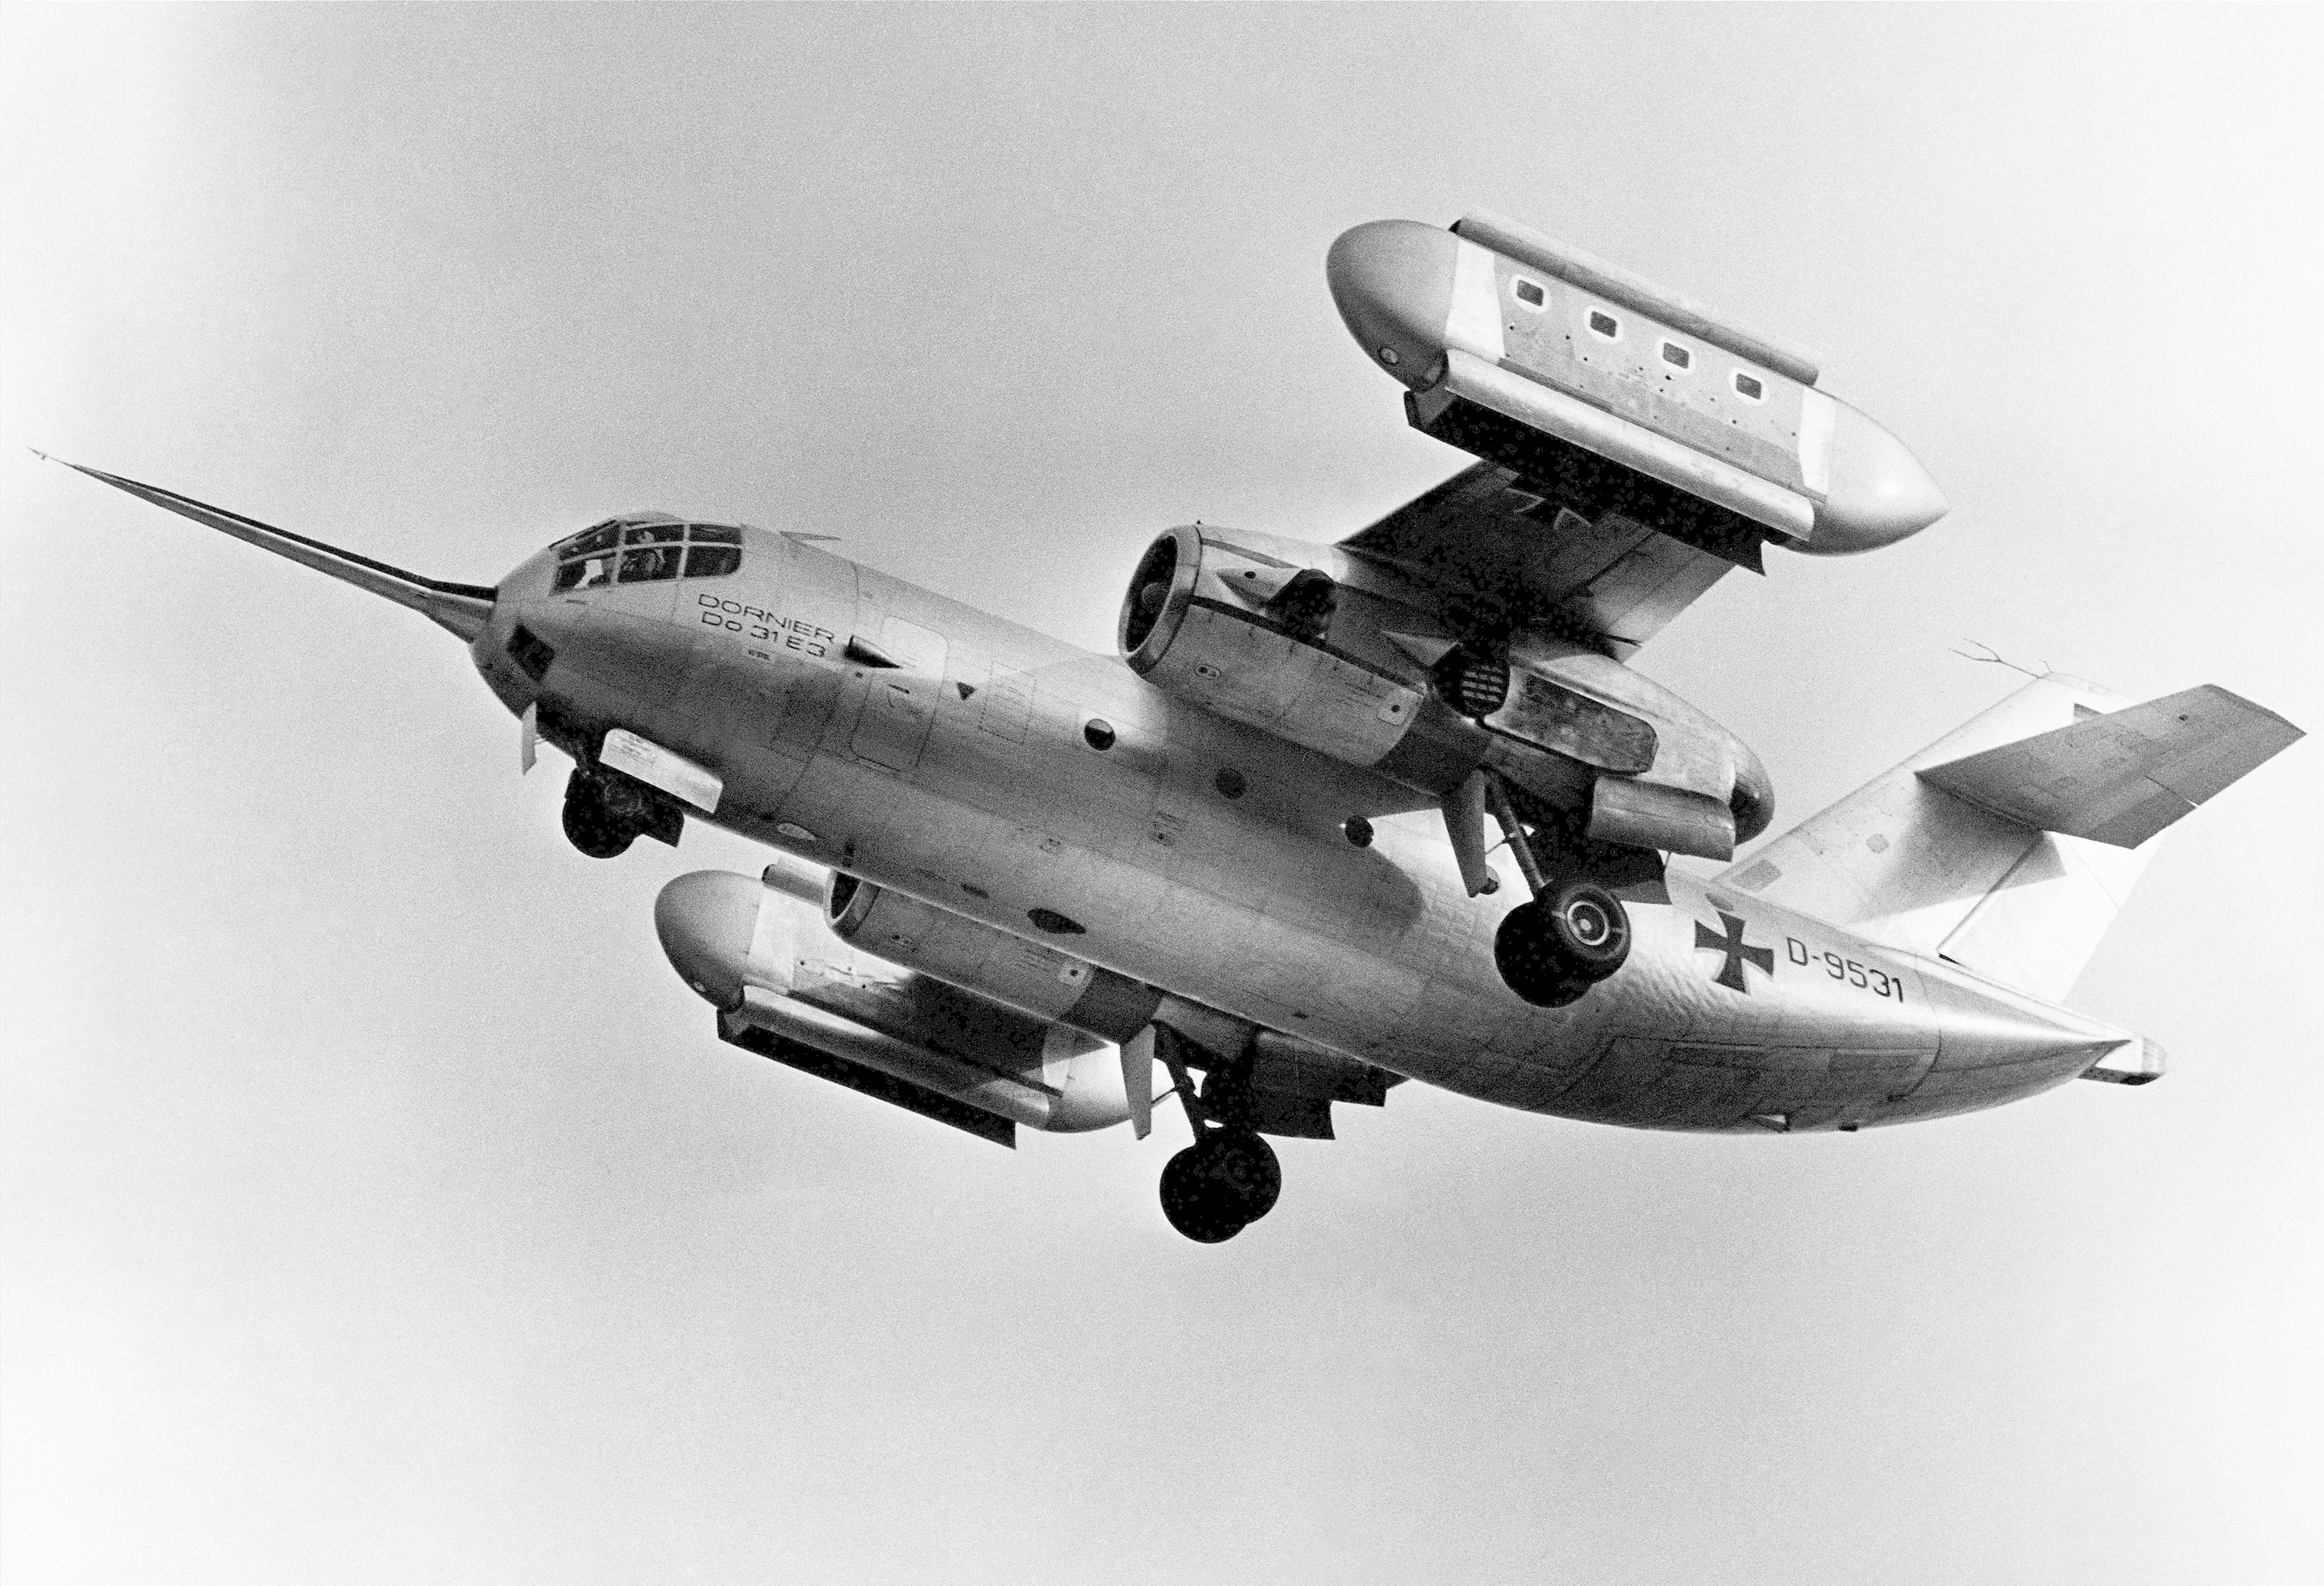 Dornier_Do-31_experimental_VTOL_transport_in_flight%2C_23_July_1968_%28A-42712-2%29.jpg